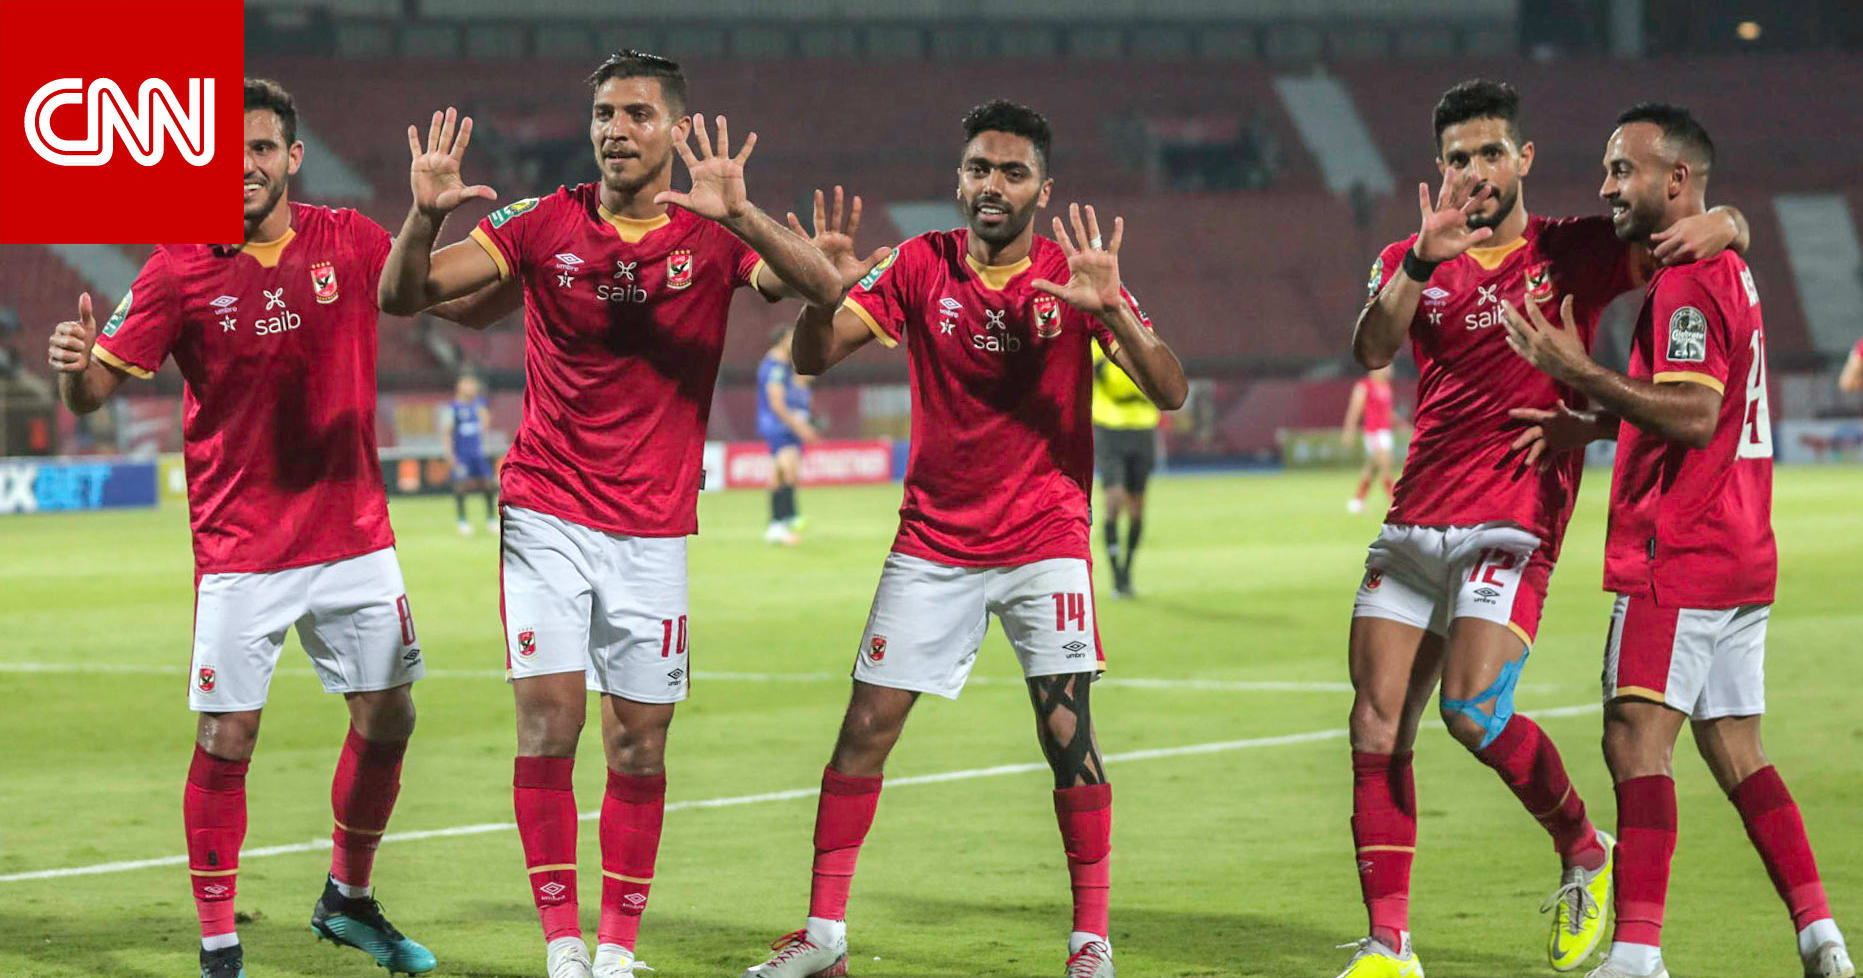 الأهلي المصري يُتوج بلقب دوري أبطال إفريقيا للمرة العاشرة في تاريخه